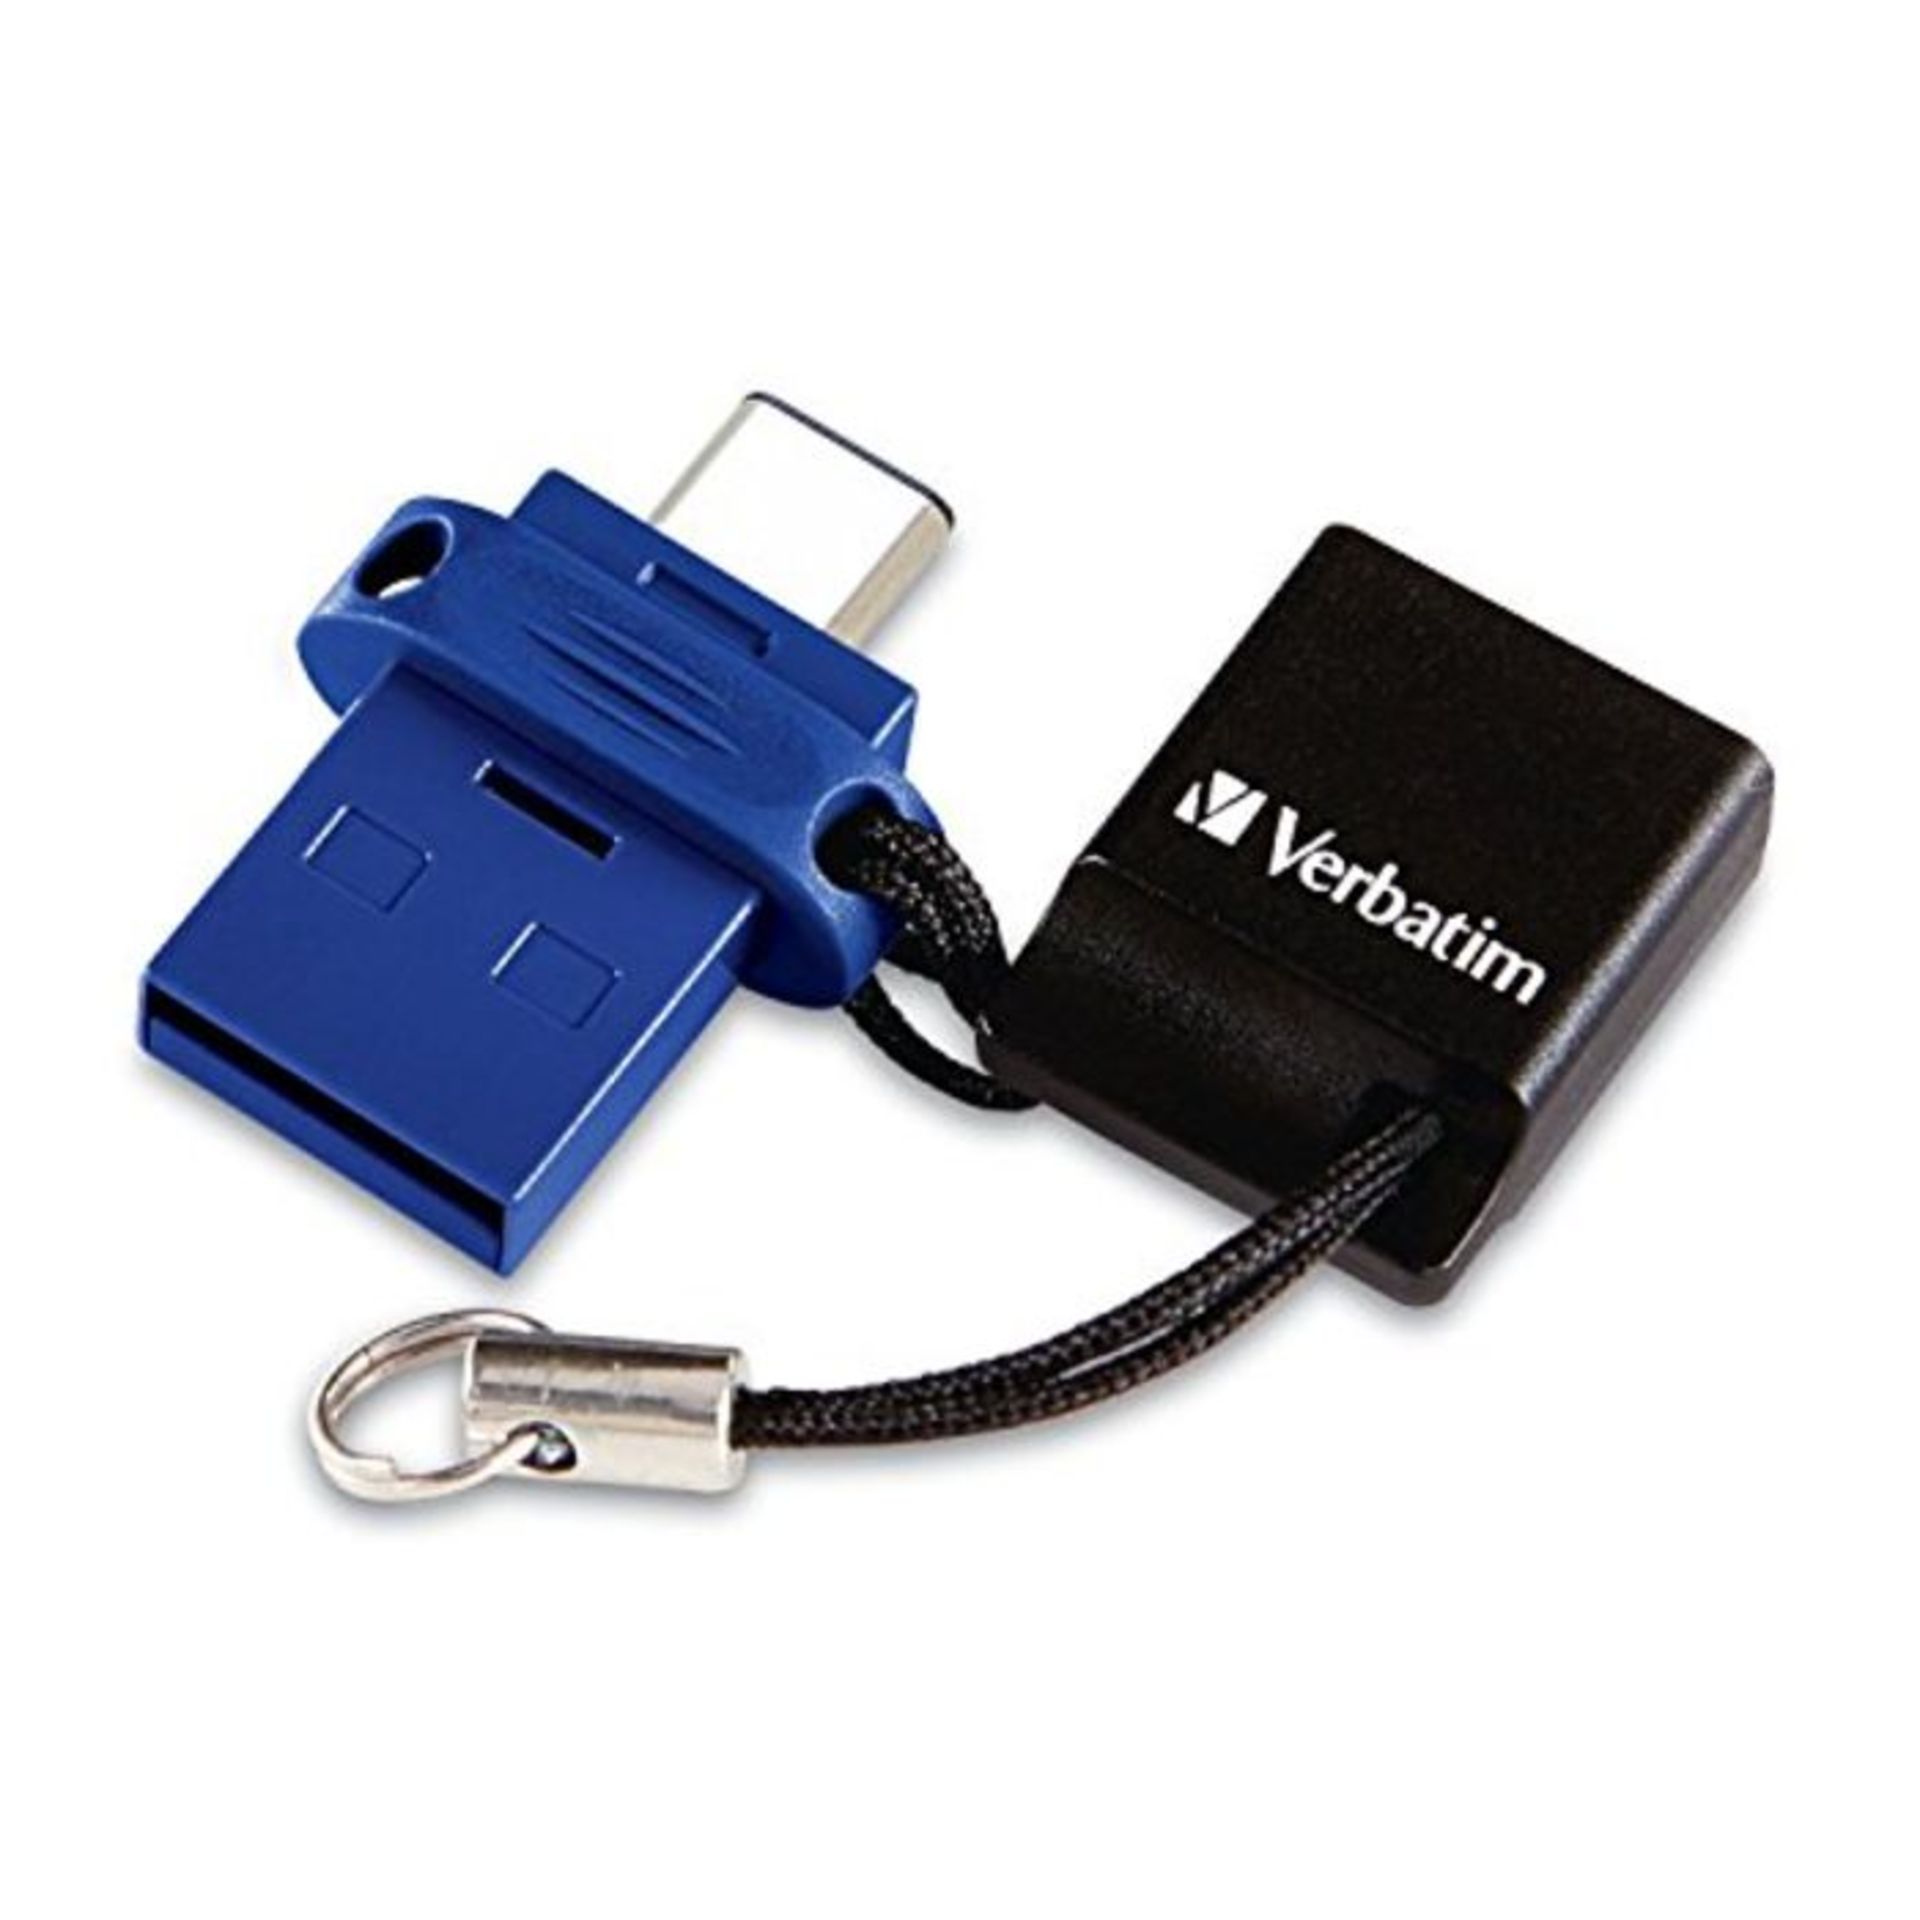 Verbatim 49966 32 GB Dual USB-C/USB 3.0 Drive